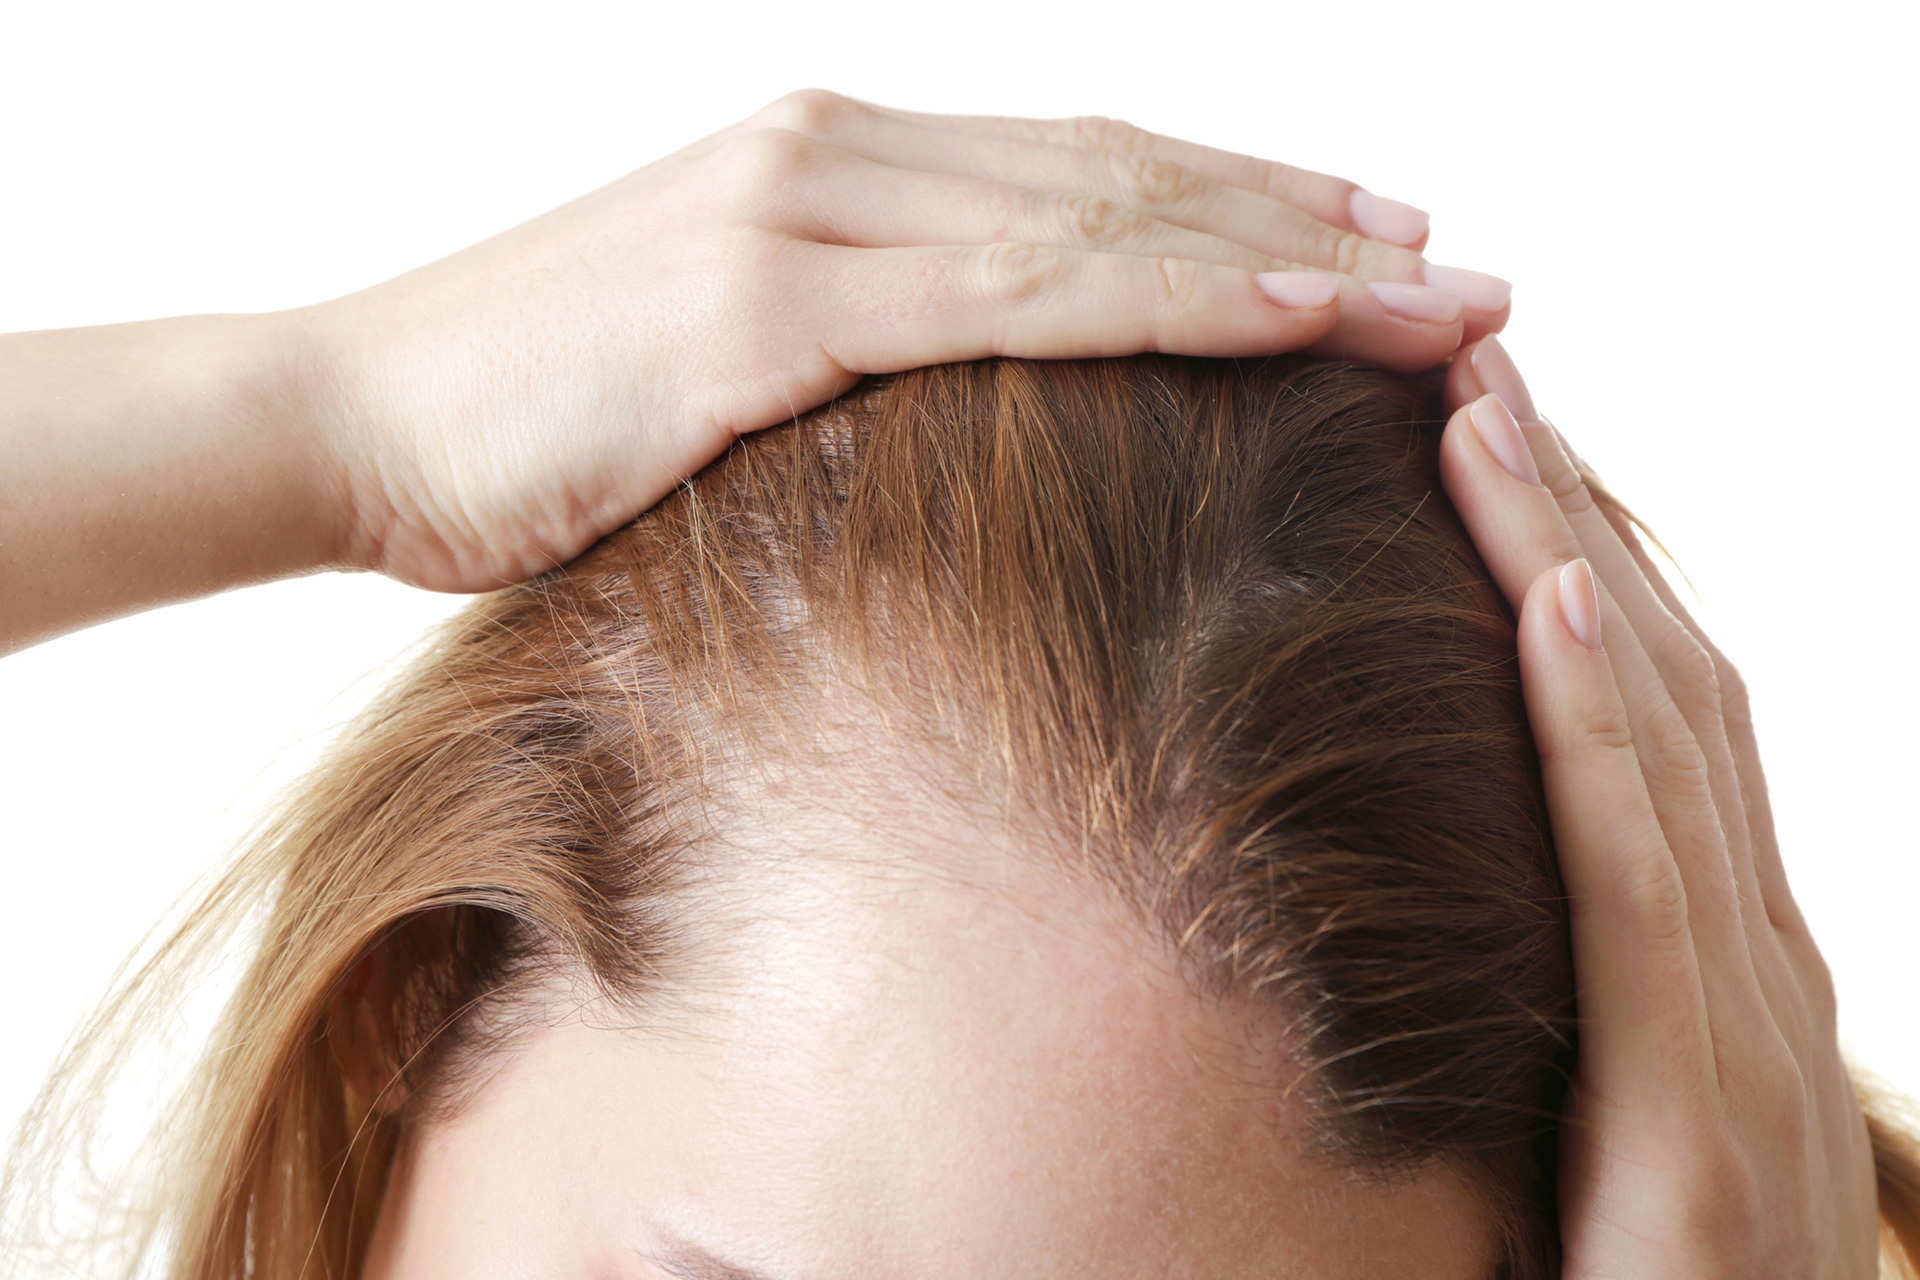 Можно ли остановить выпадение волос во время климакса